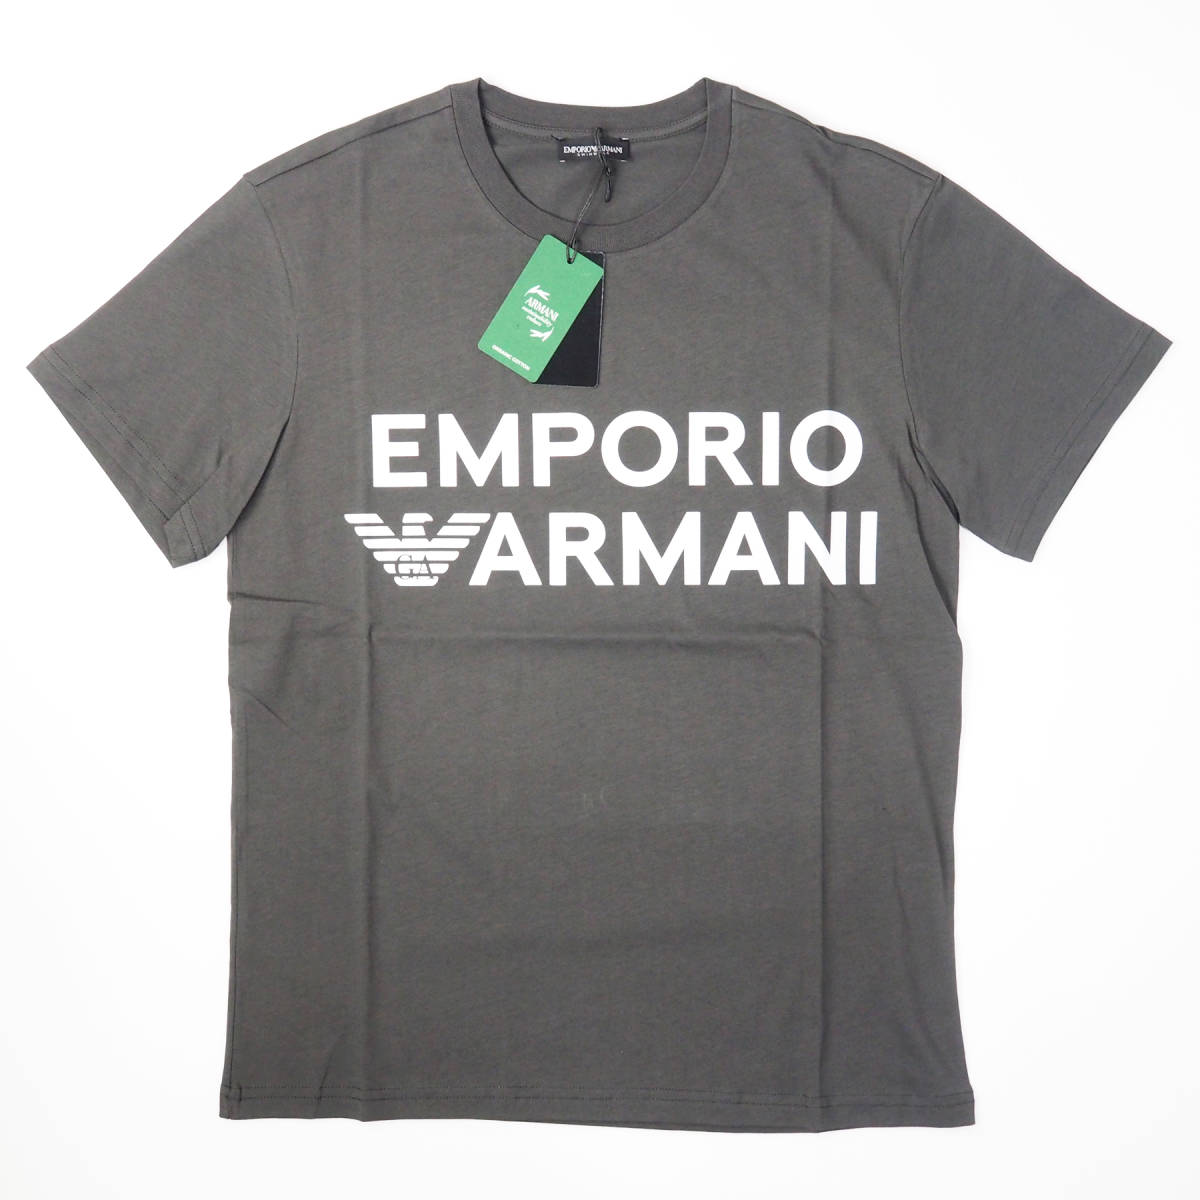 新品正規品 Emporio Armani エンポリオ アルマーニ SWIM 211831 3R479 クルーネック ブランド ロゴ Tシャツ ブラウン S